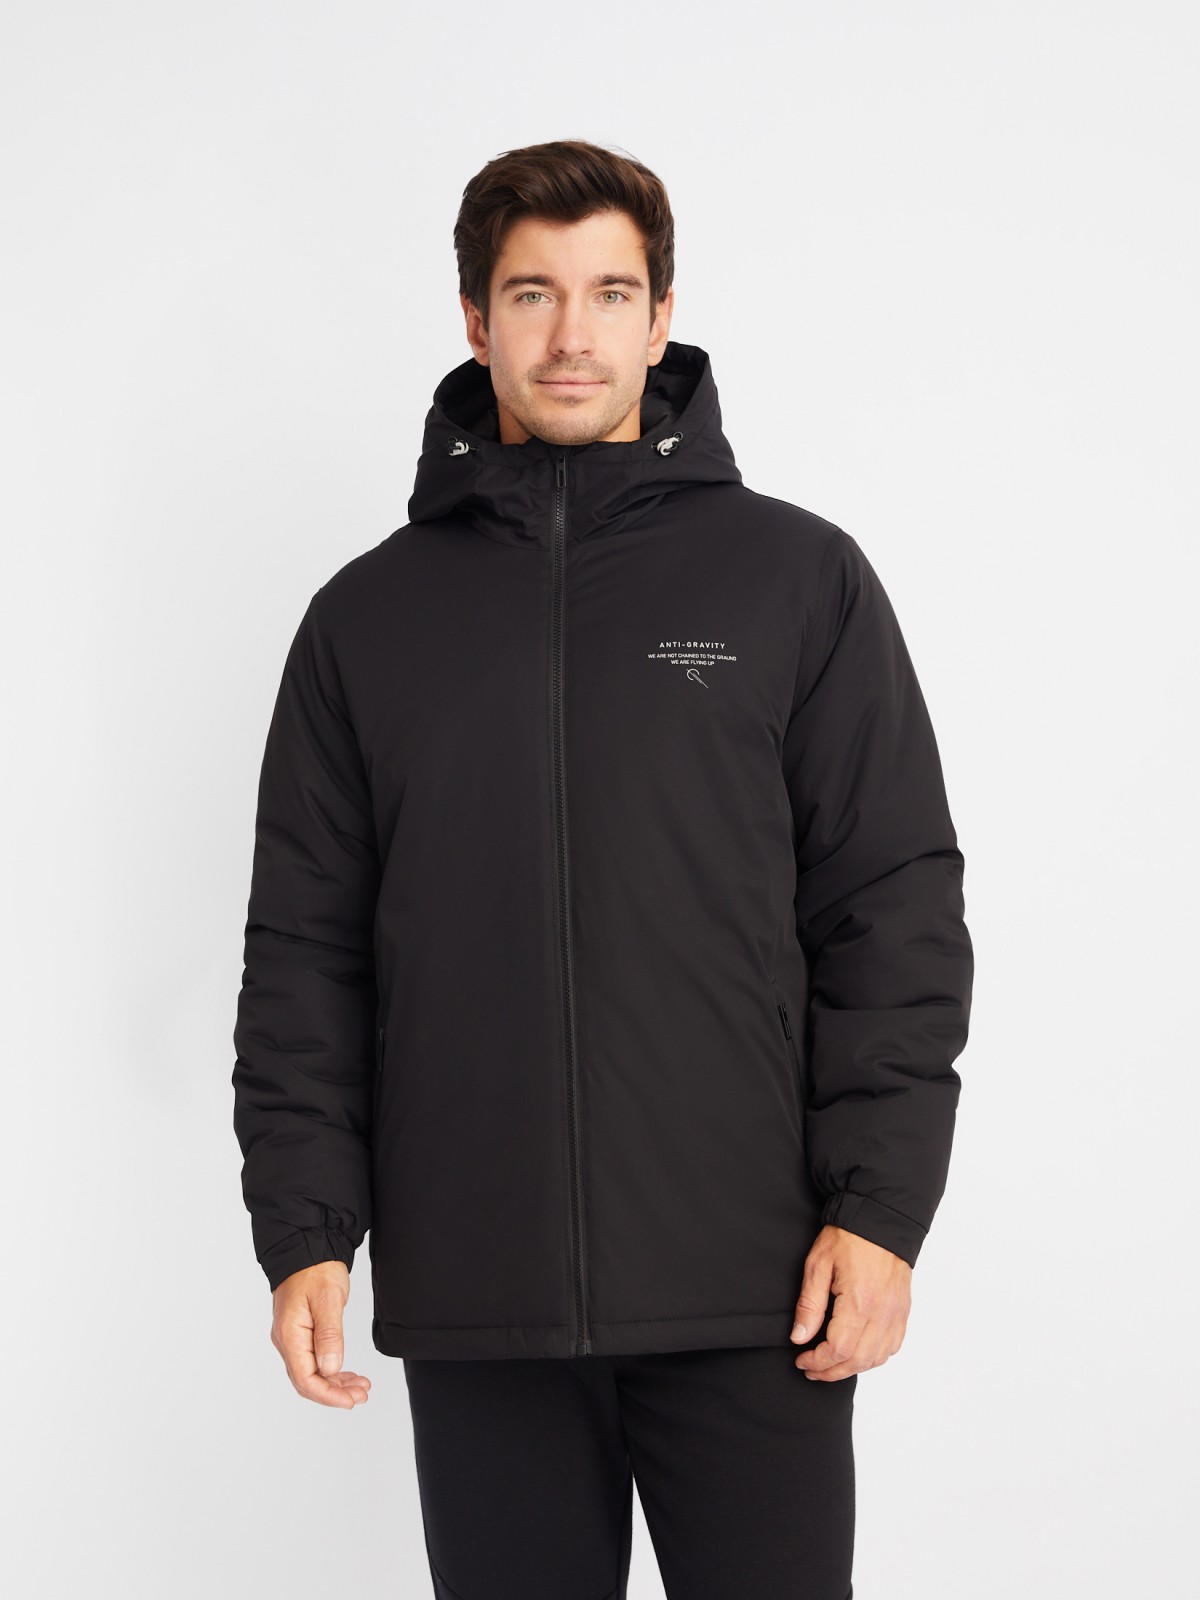 Тёплая куртка с капюшоном на синтепоне zolla 01412510L174, цвет черный, размер M - фото 3